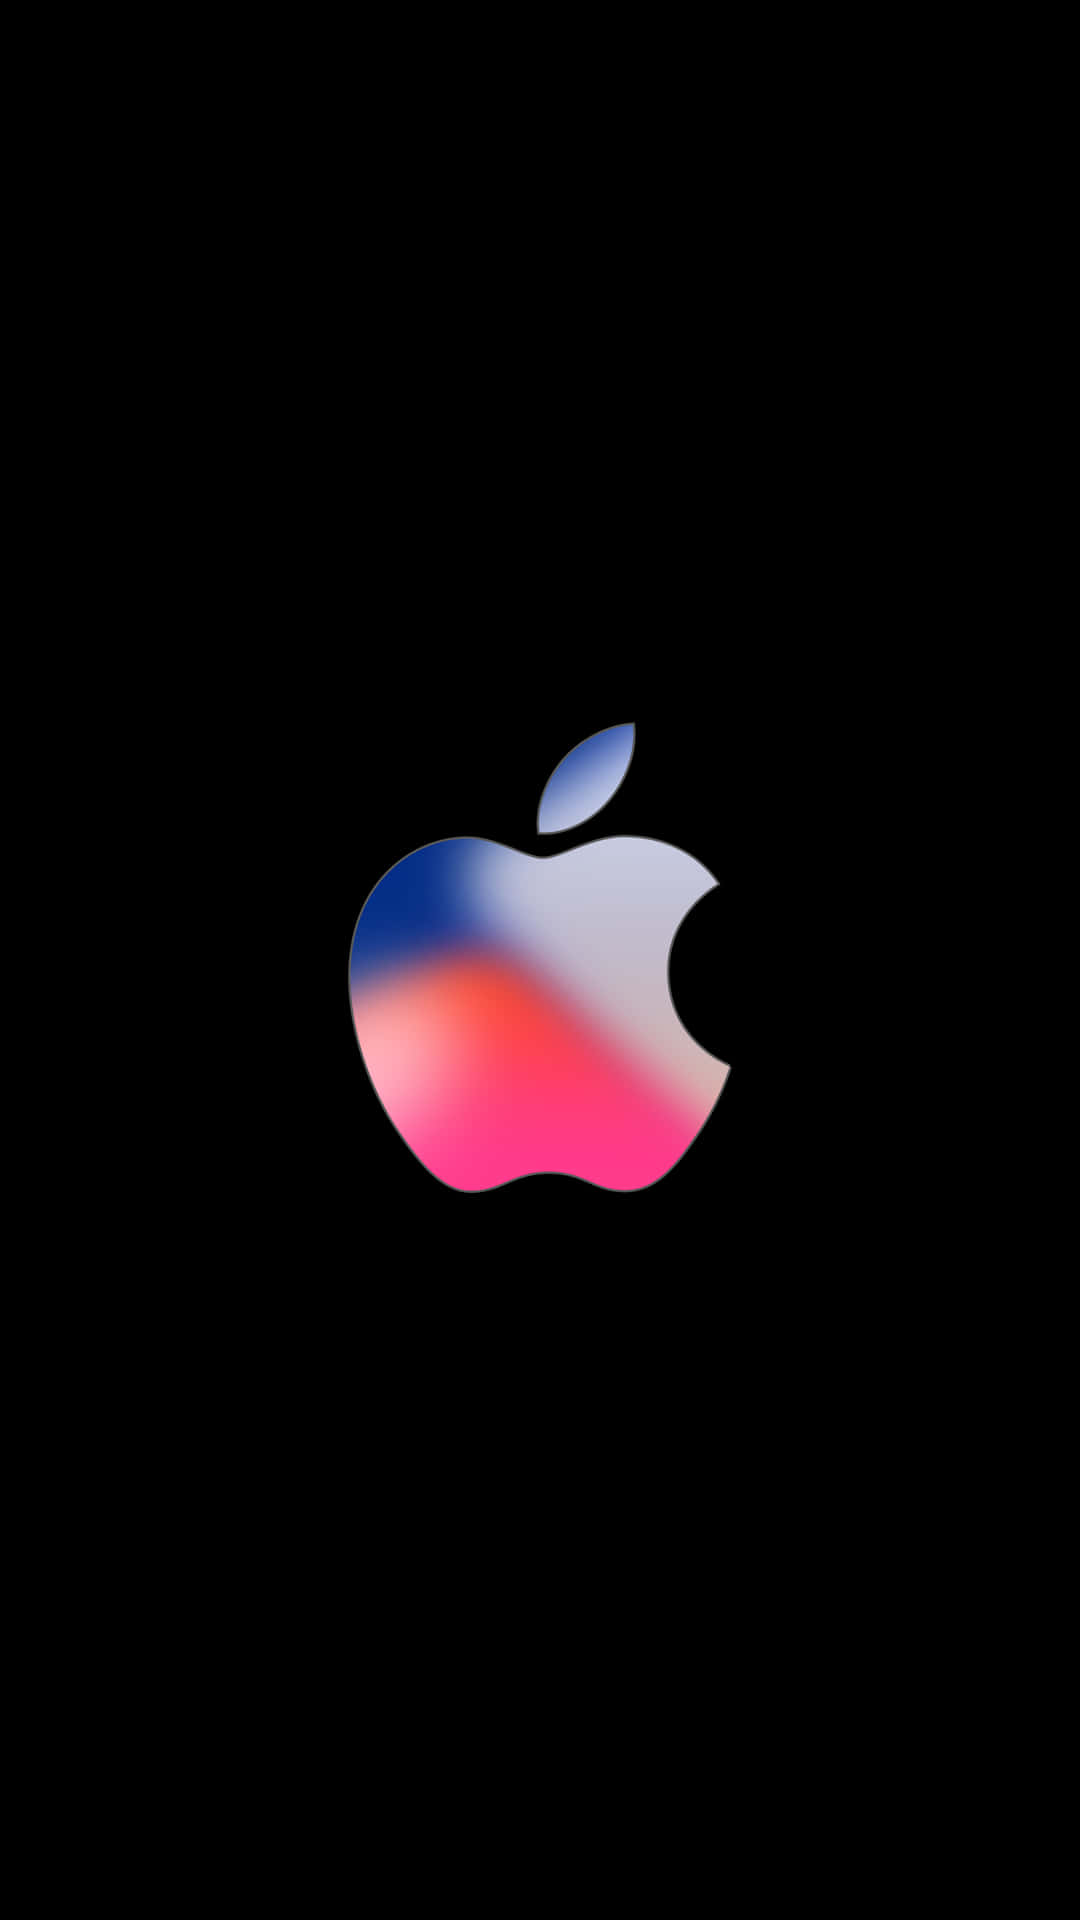 Apple-logo på sort baggrund Wallpaper